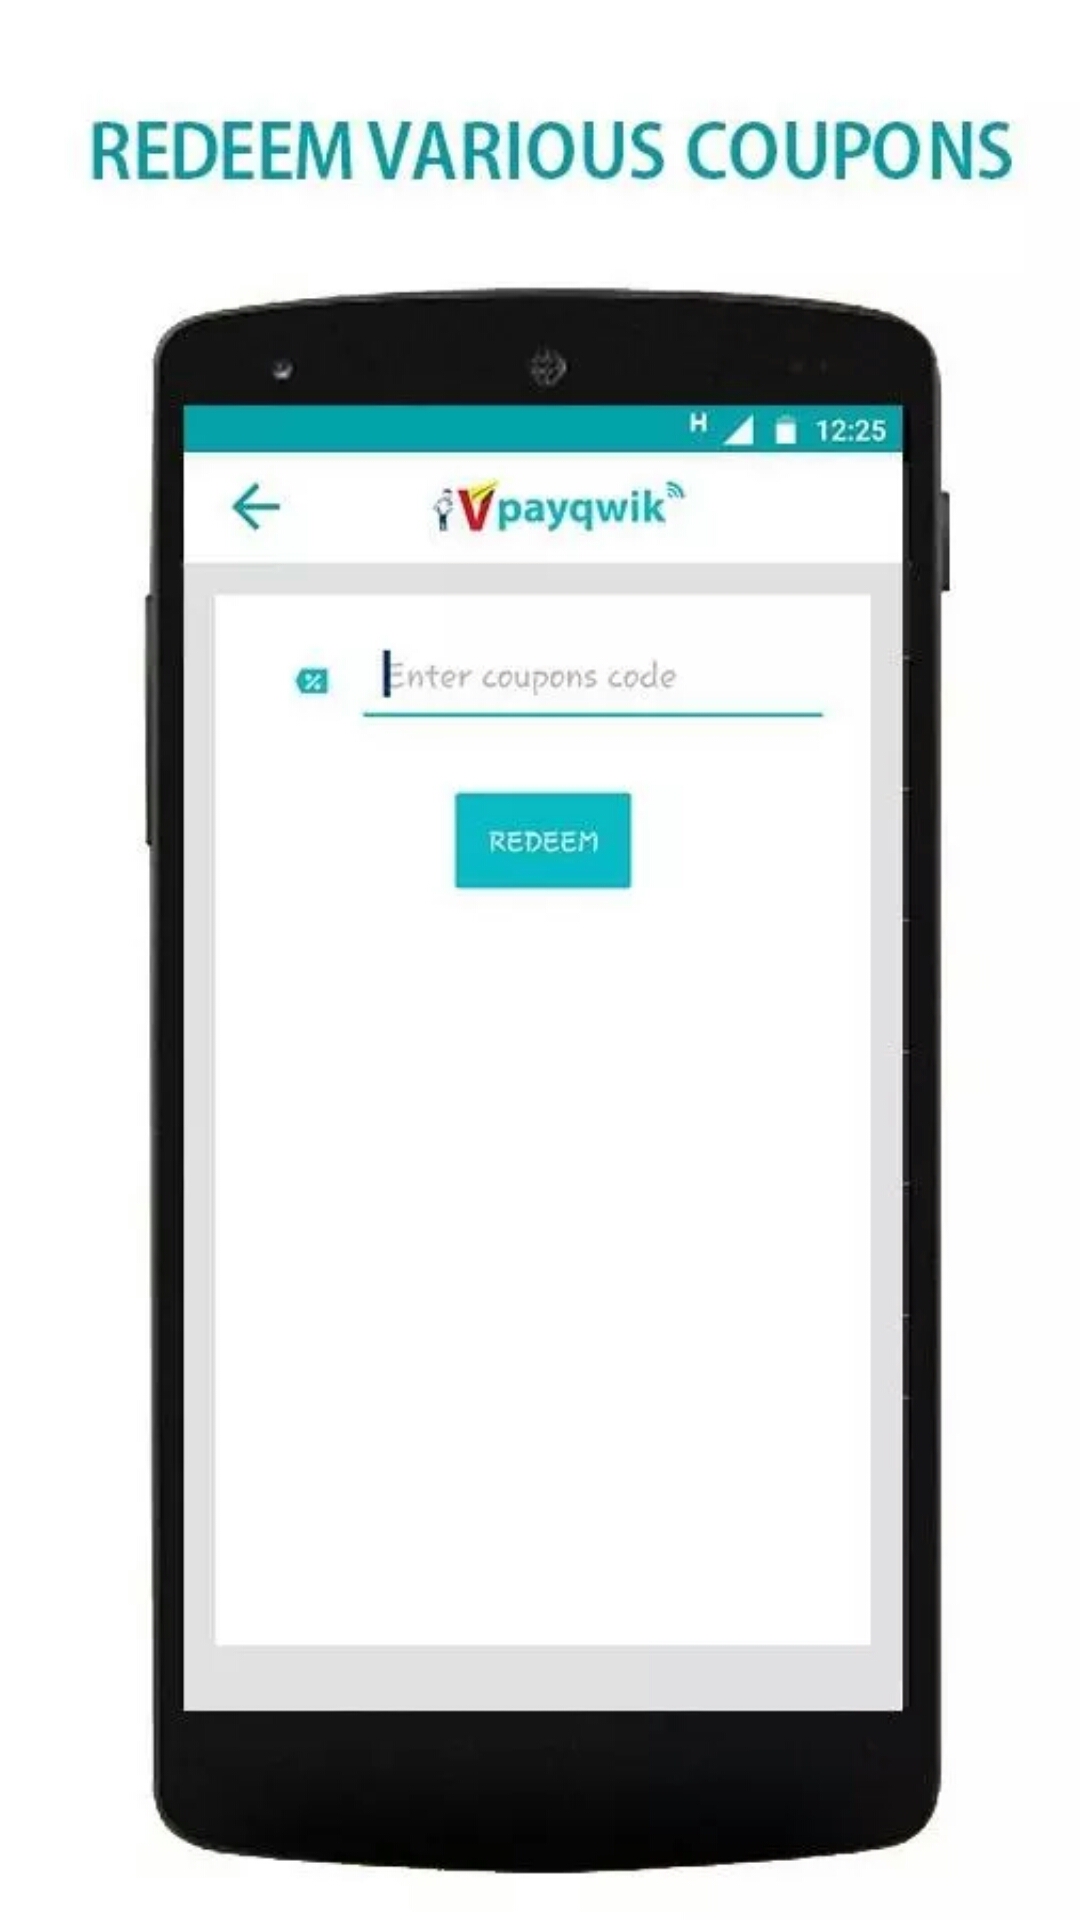 VPayQwik - Mobile Wallet